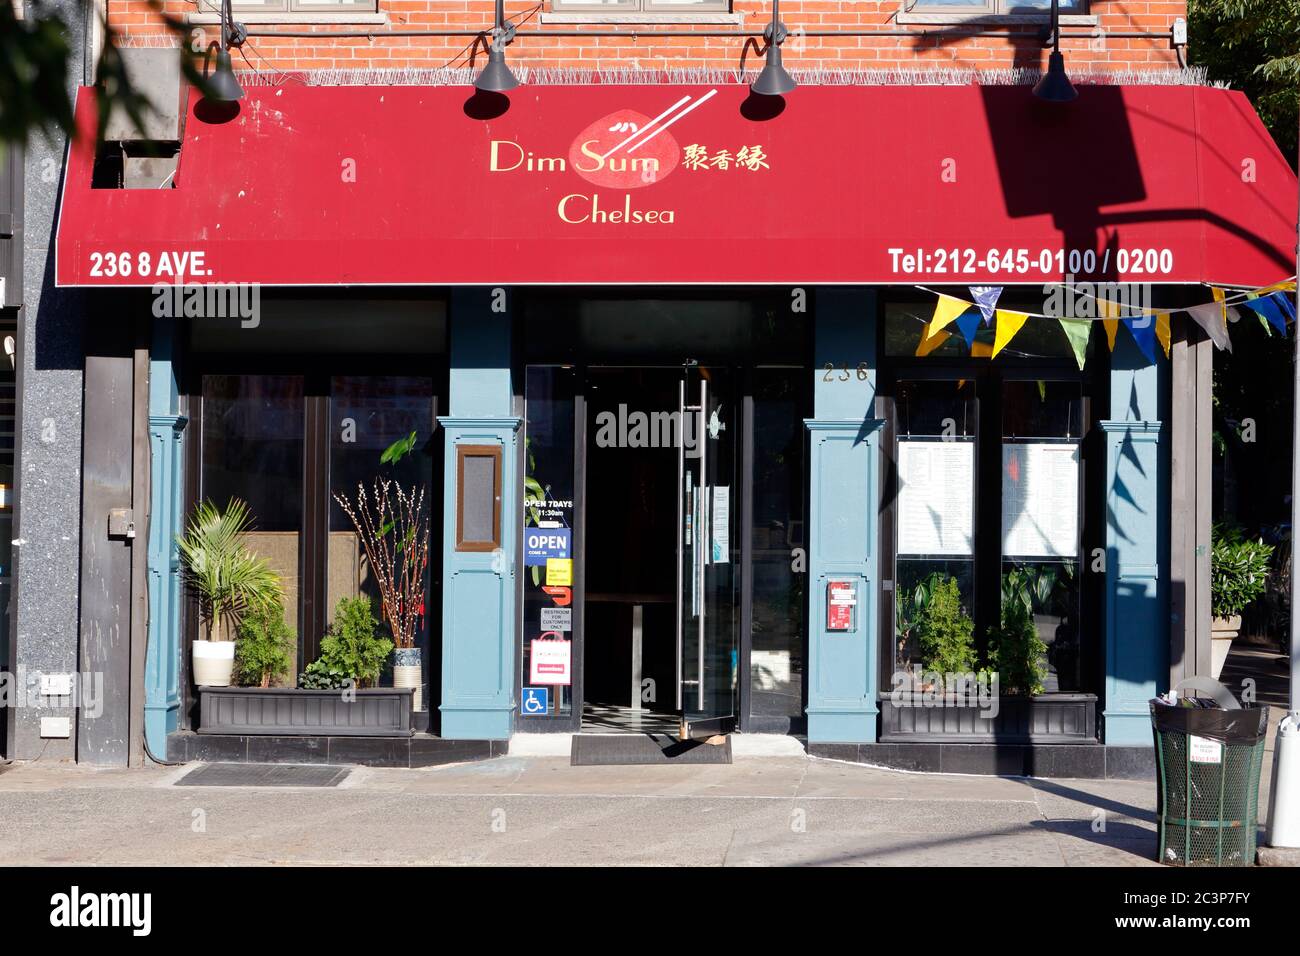 Dim Sum Chelsea, 236 8. Ave, New York, NYC Foto von einem chinesischen Restaurant im Chelsea-Viertel von Manhattan. Stockfoto